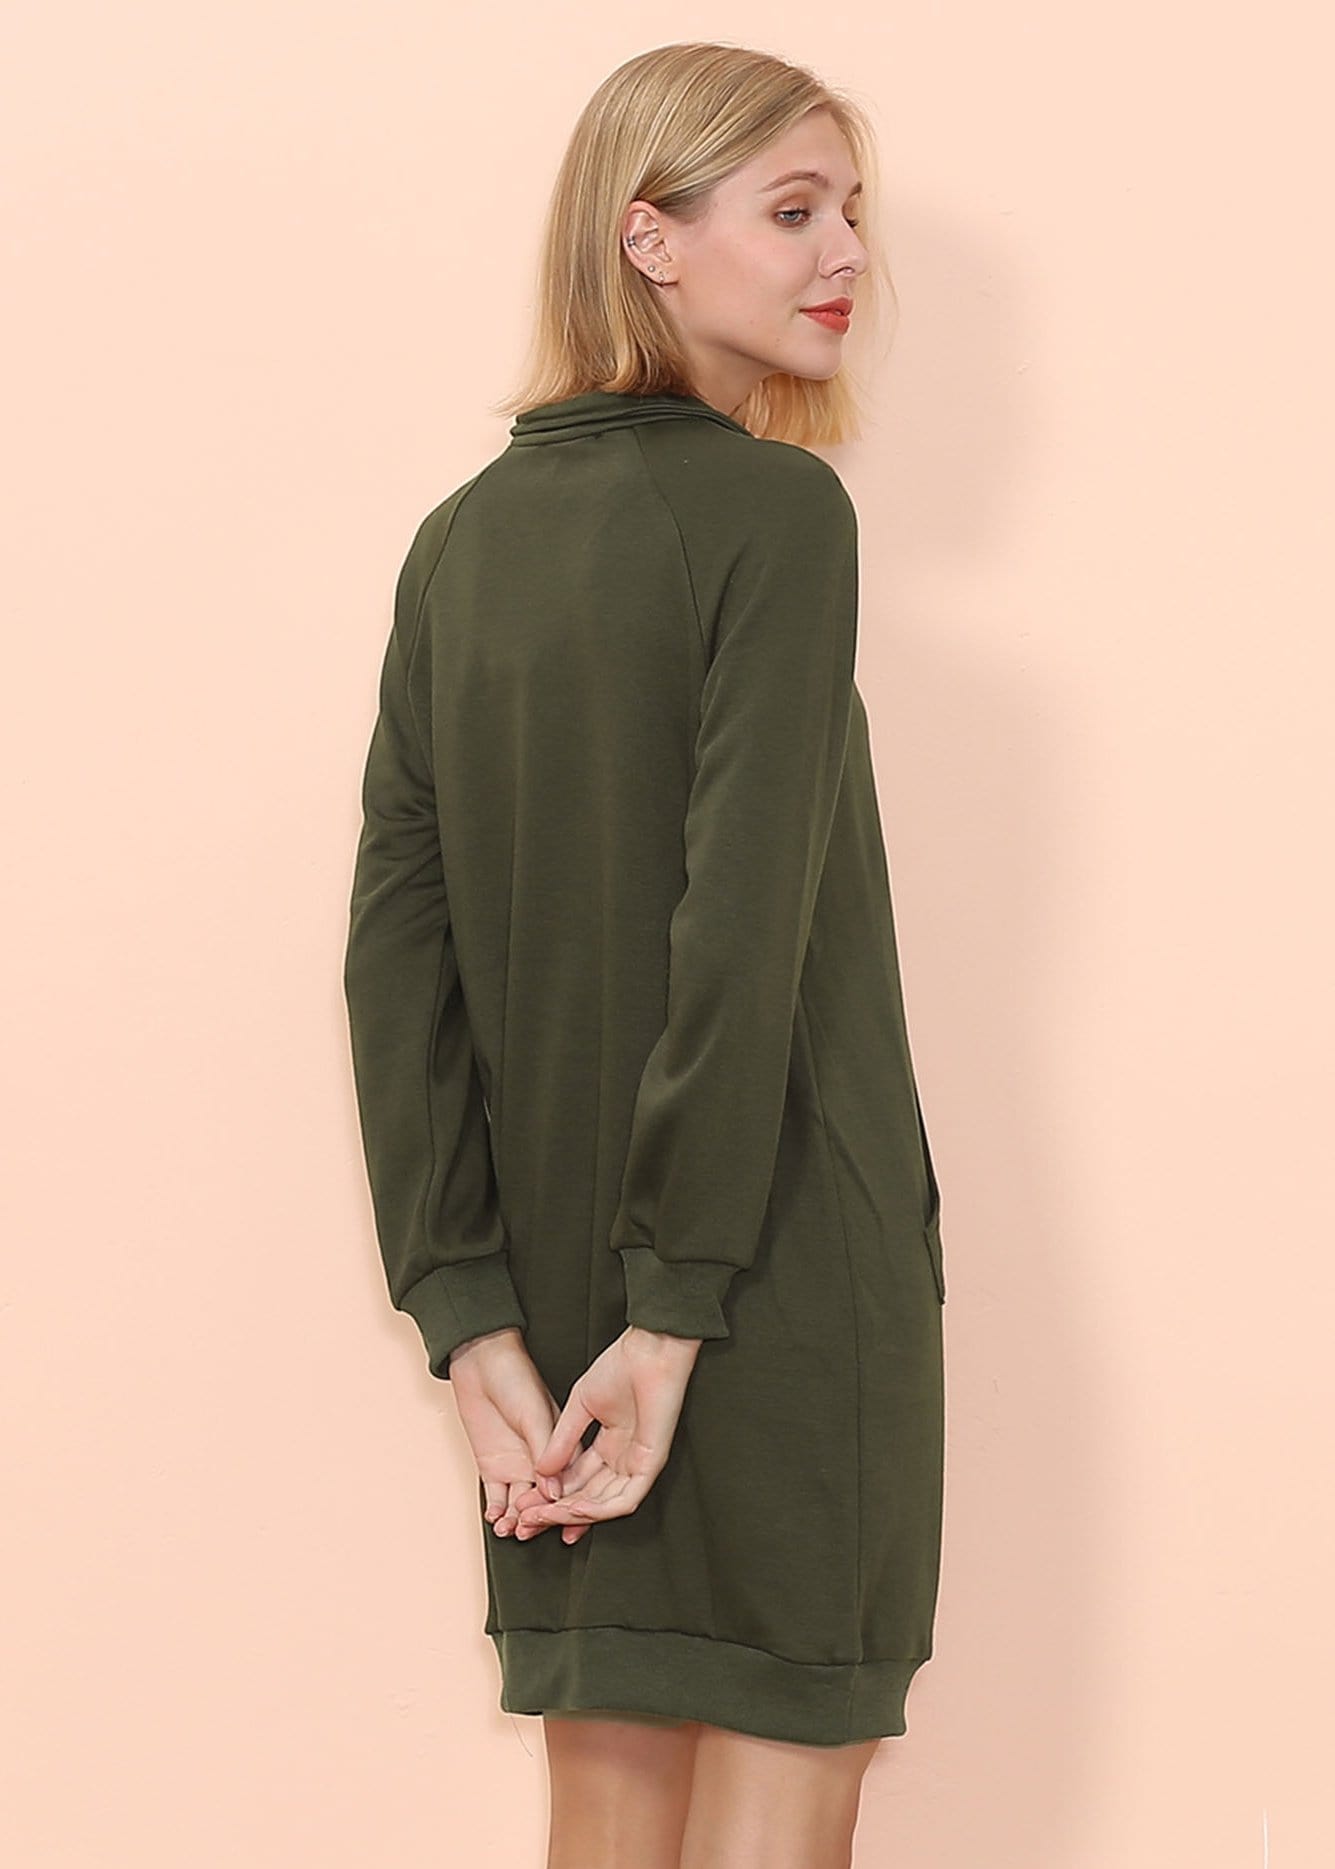 Solid Zip Anna-Kaci Up Knee Above Neck Dress – Sweater Length Pocket Kangaroo